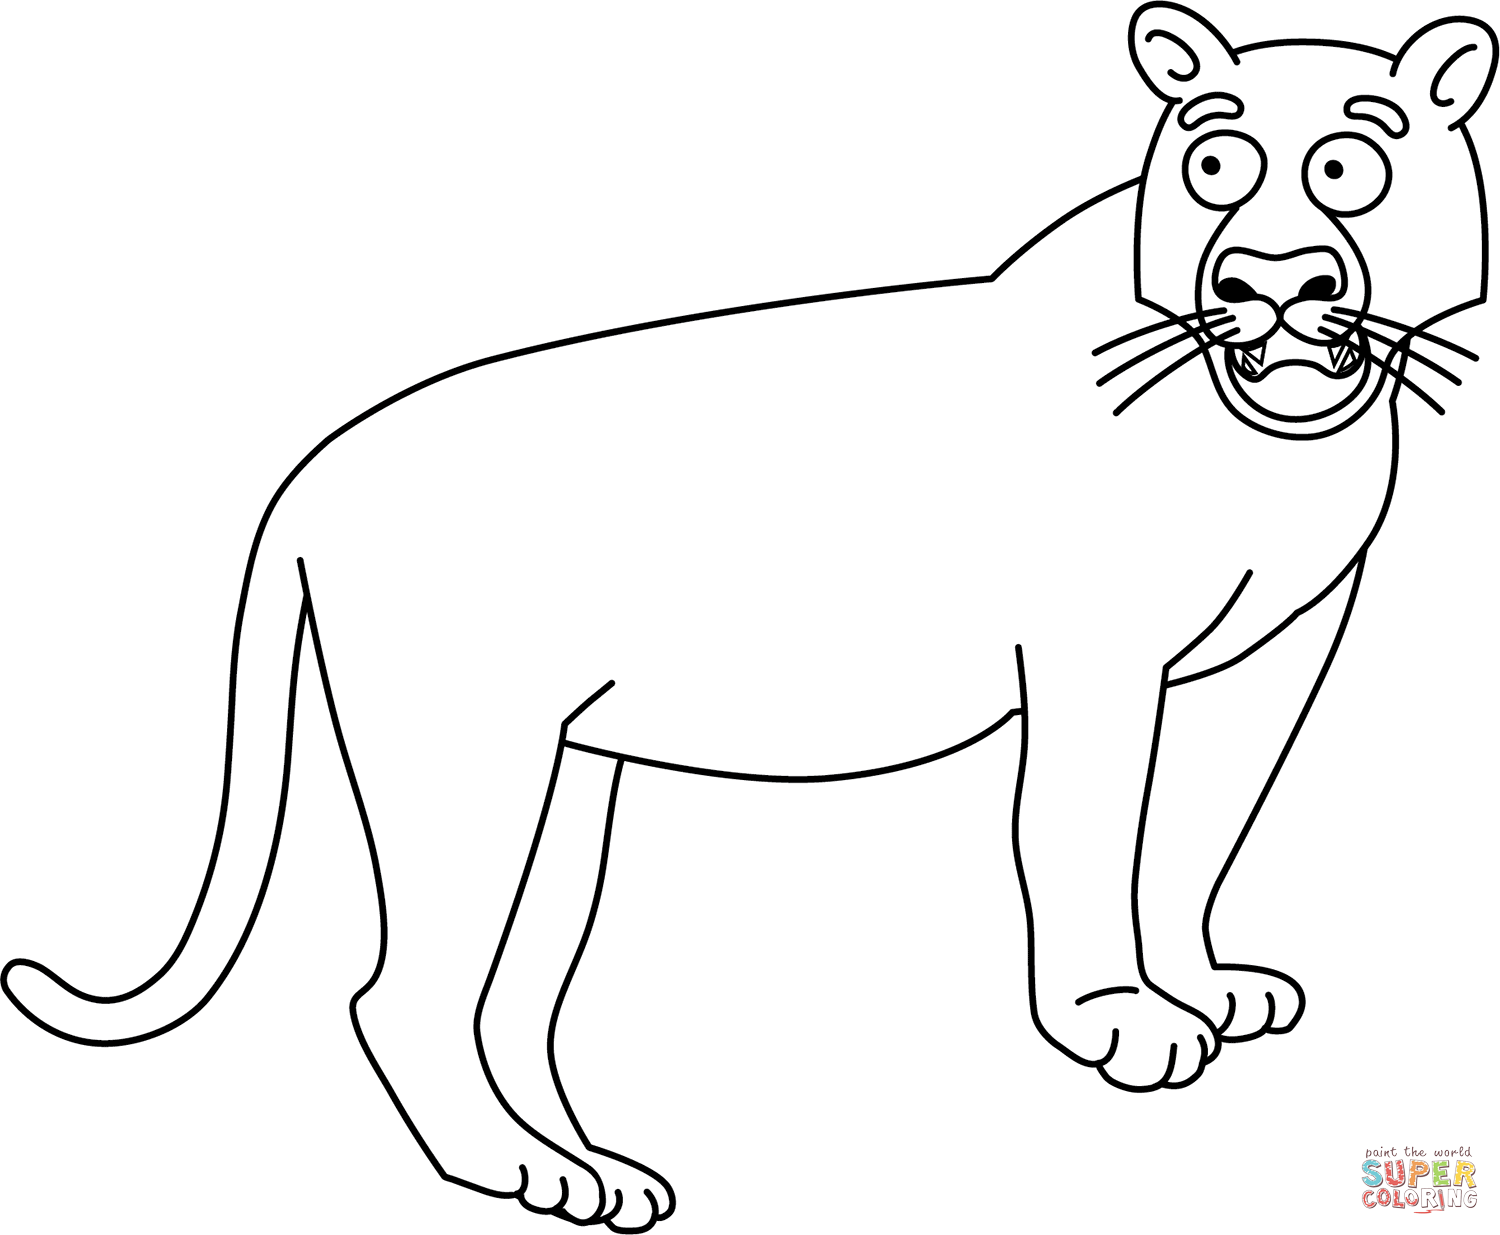 Dibujo de tigre divertido sin rayas para colorear dibujos para colorear imprimir gratis